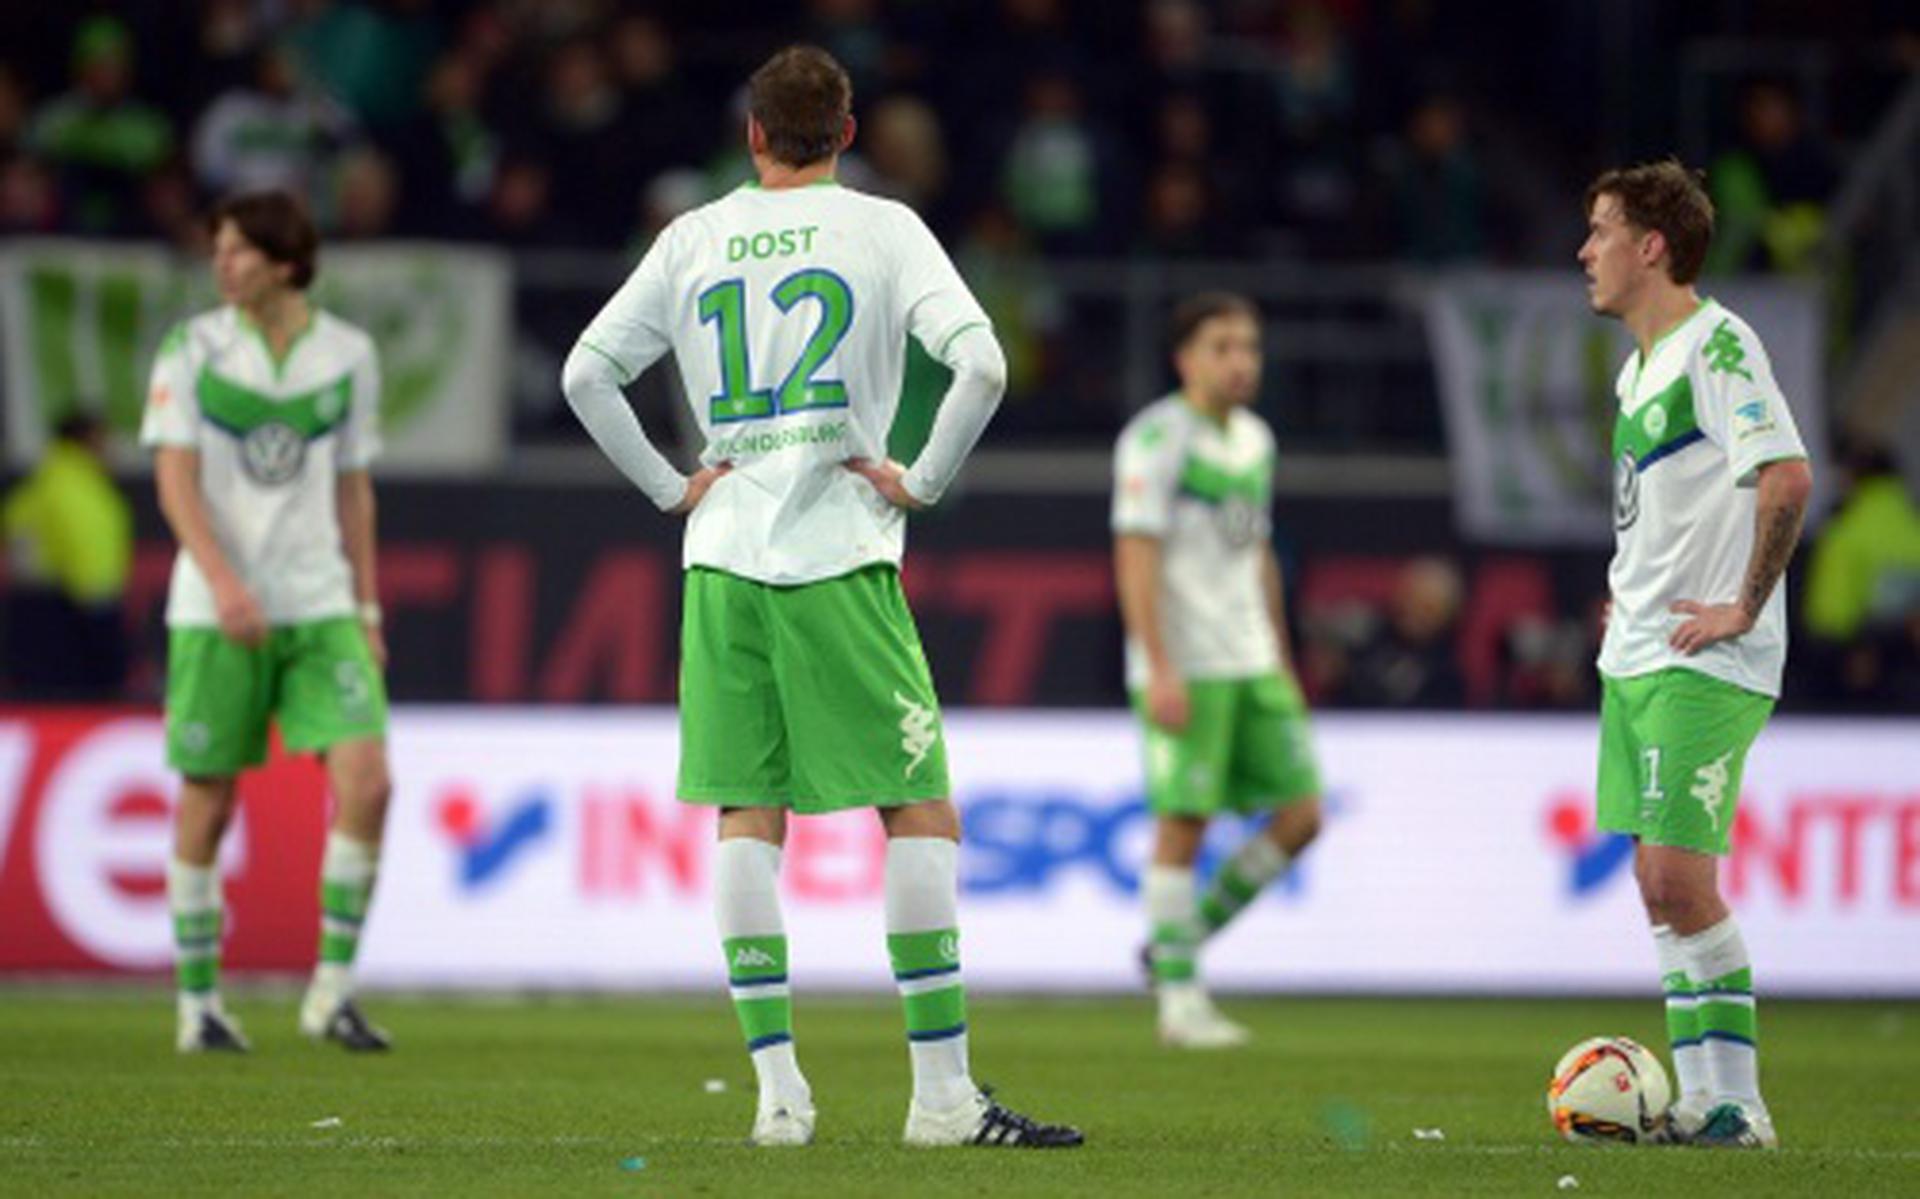 Dost langer uitgeschakeld bij Wolfsburg